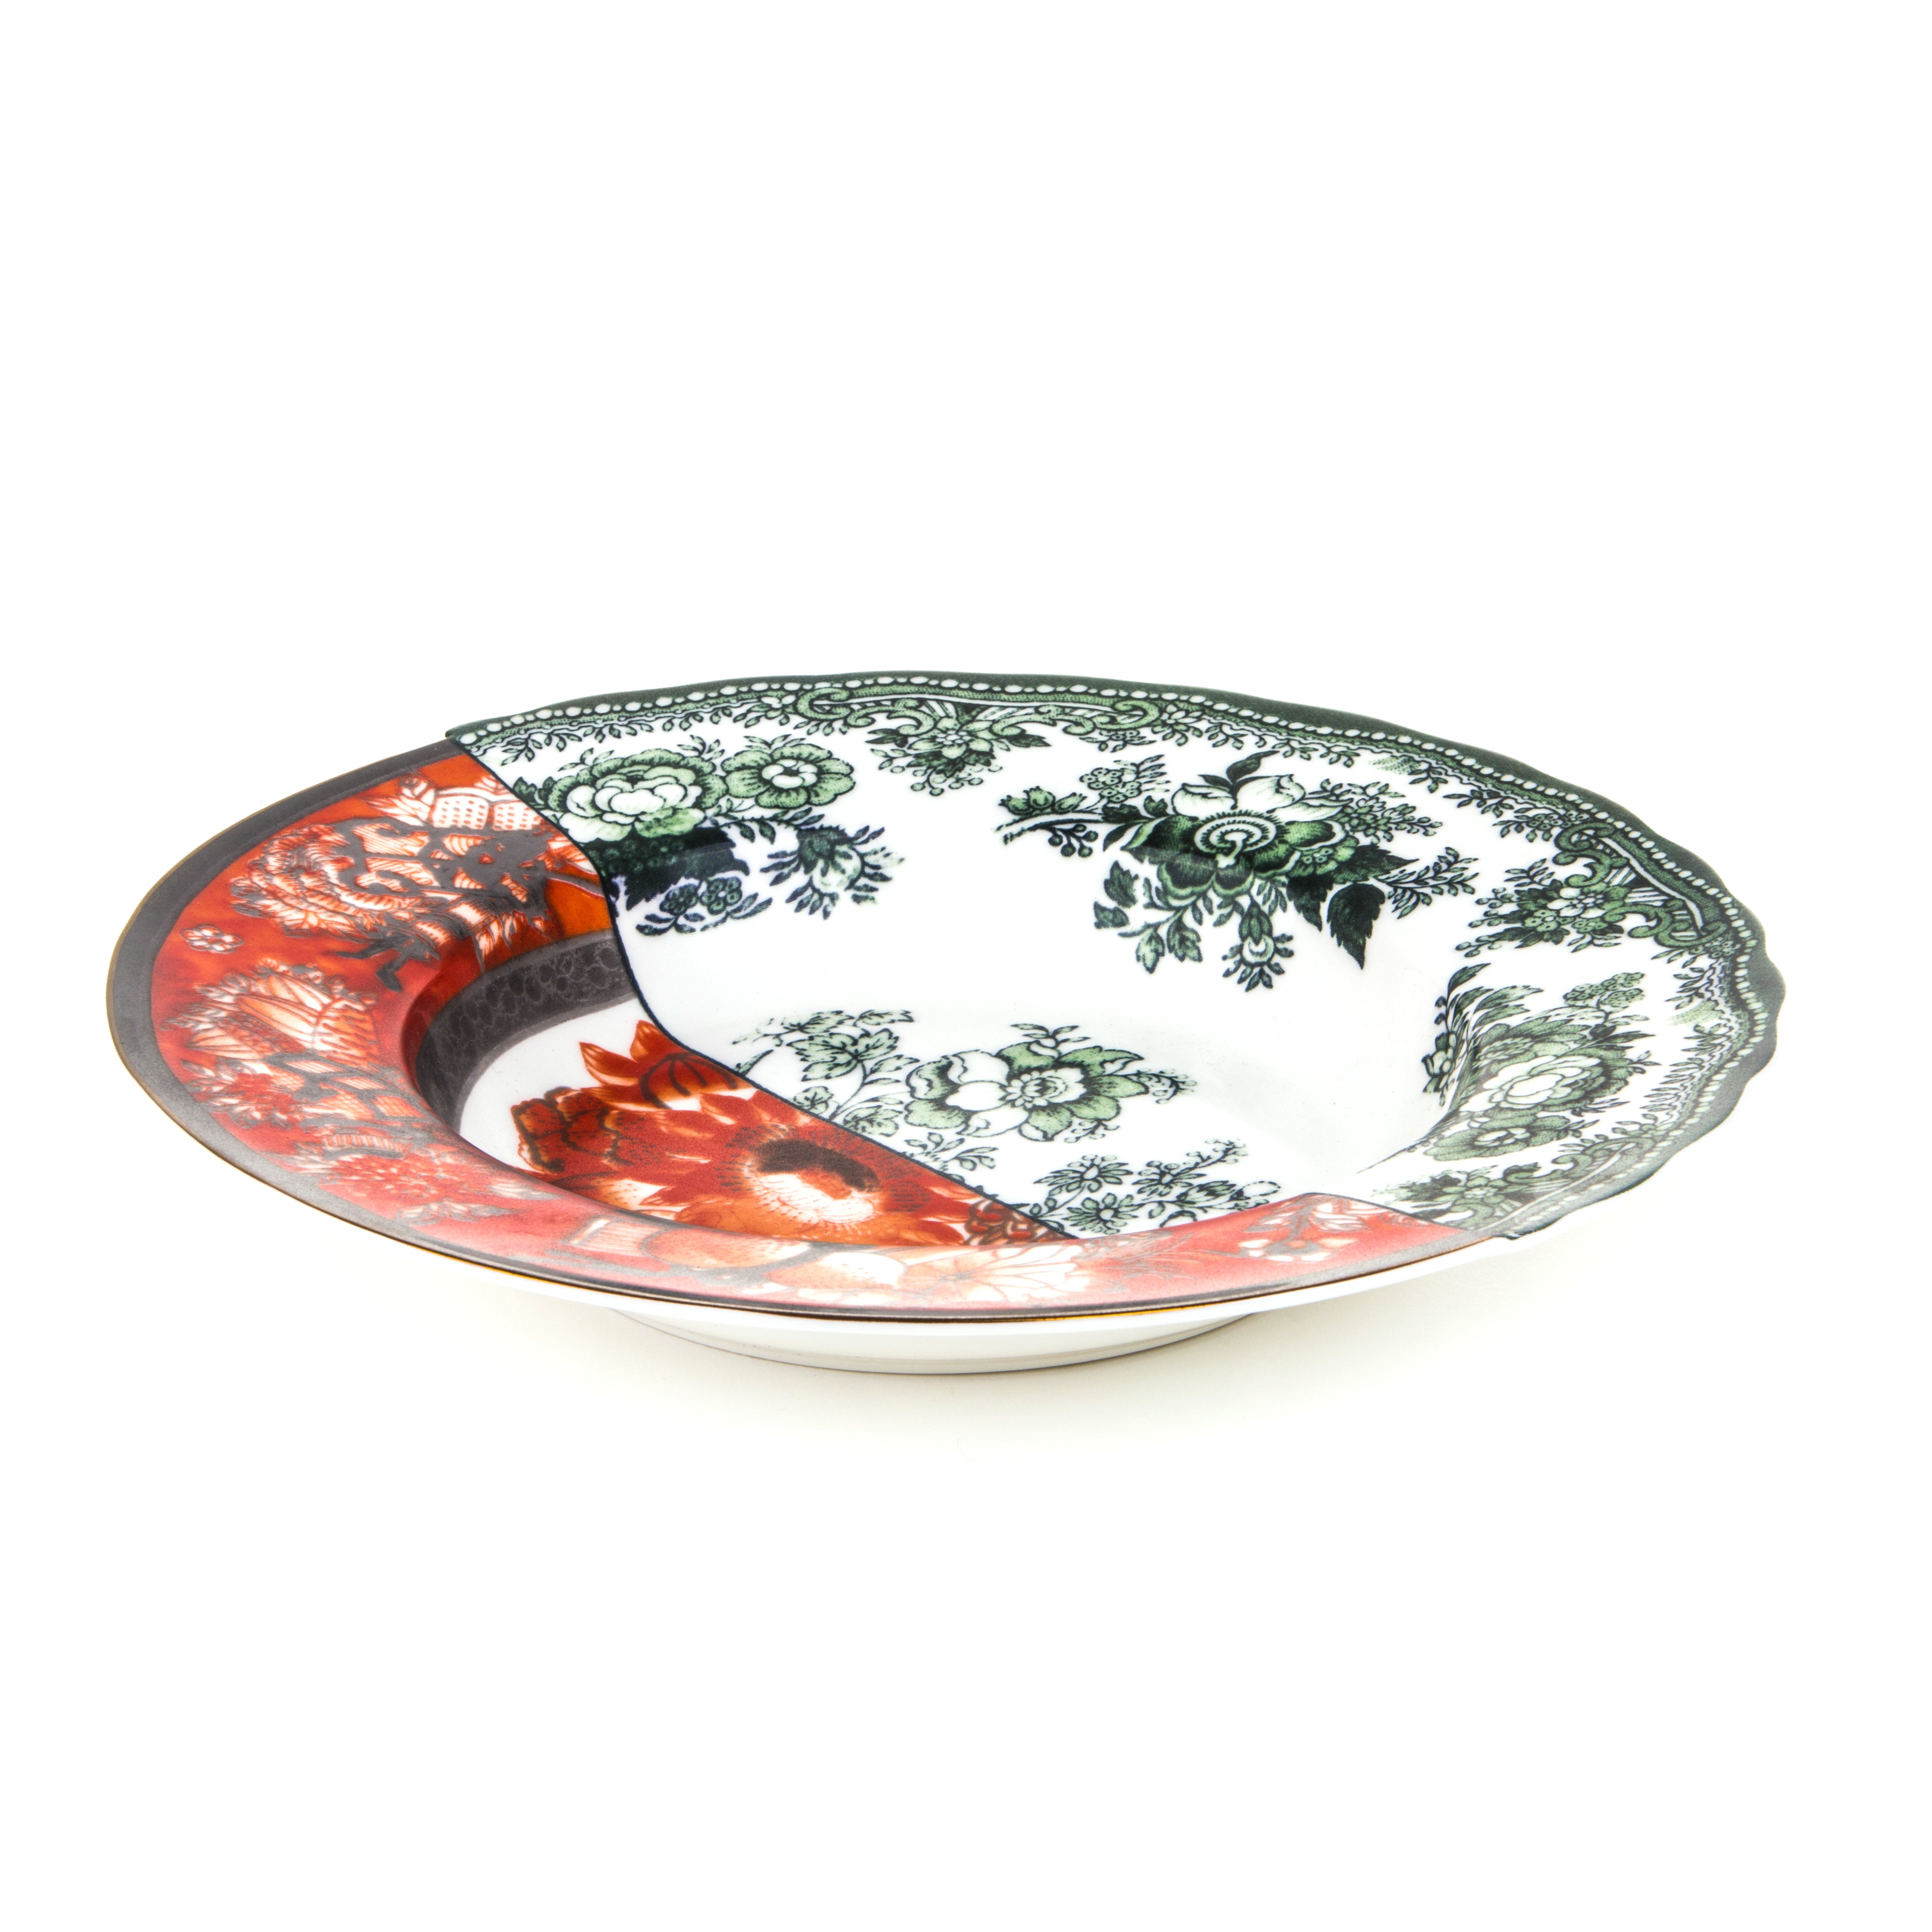 Seletti Hybrid Deep plate in porcelain, diameter 25.4 cm